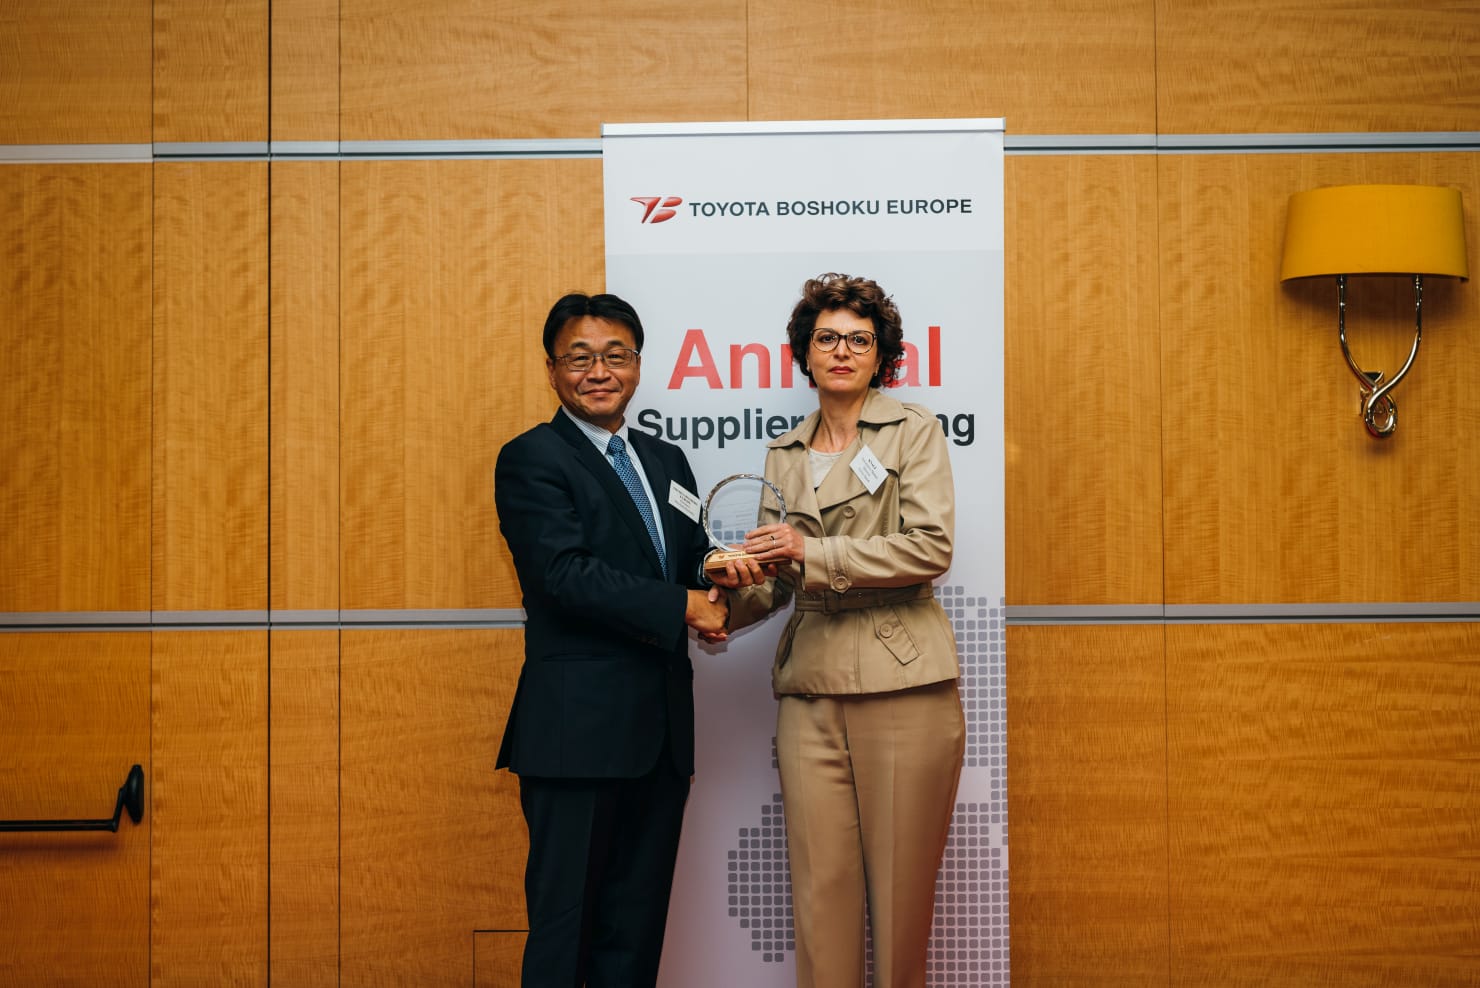 Cerimônia de premiação para os melhores fornecedores europeus do Toyota Boshoku em Zaventem.